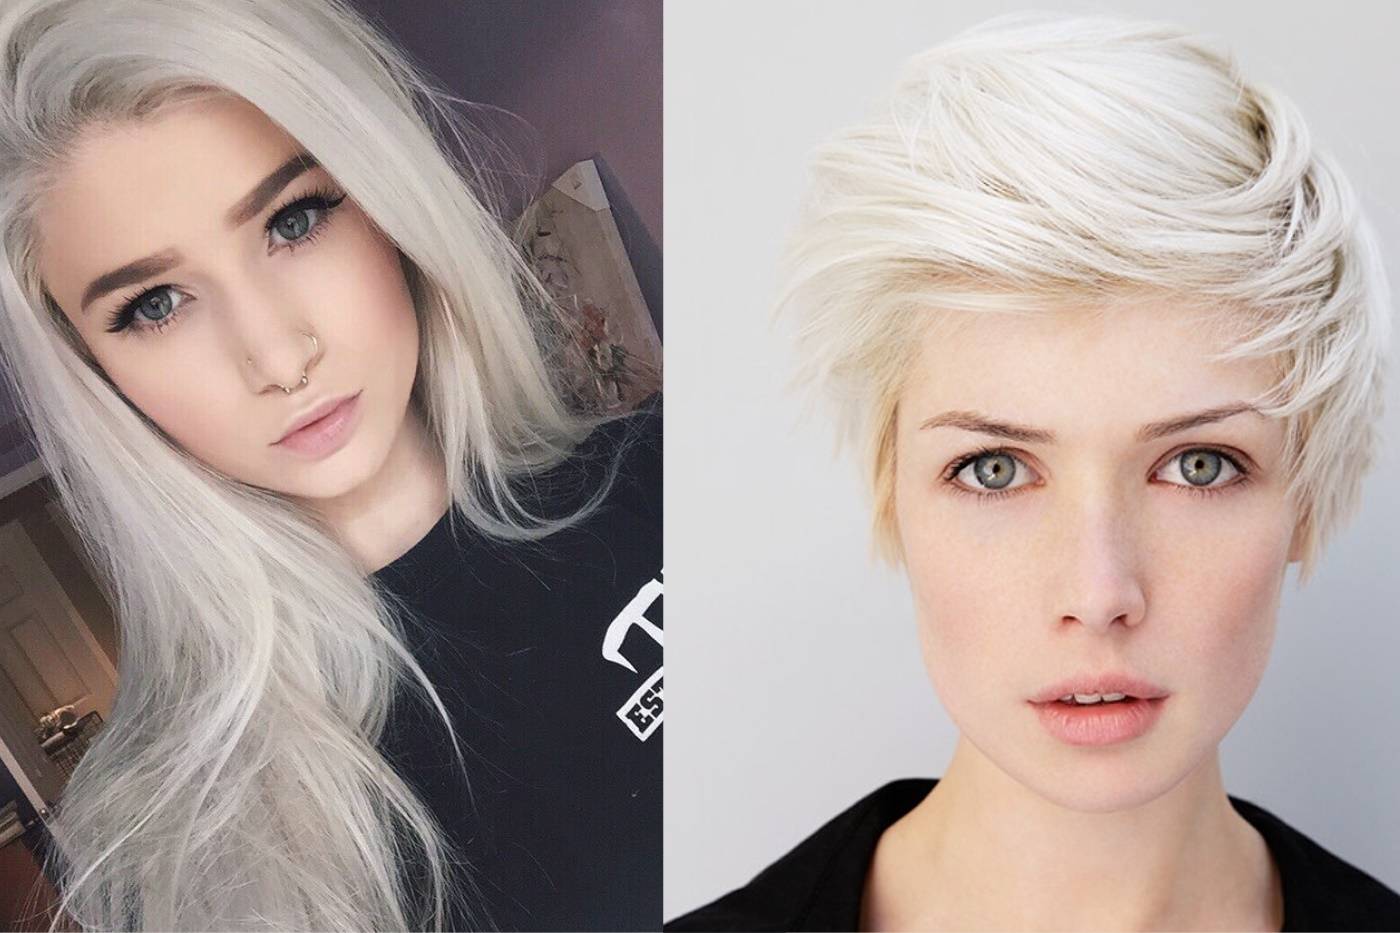 Покраска волос в белый цвет: техника окрашивания, советы, фото и отзывы - luv.ru